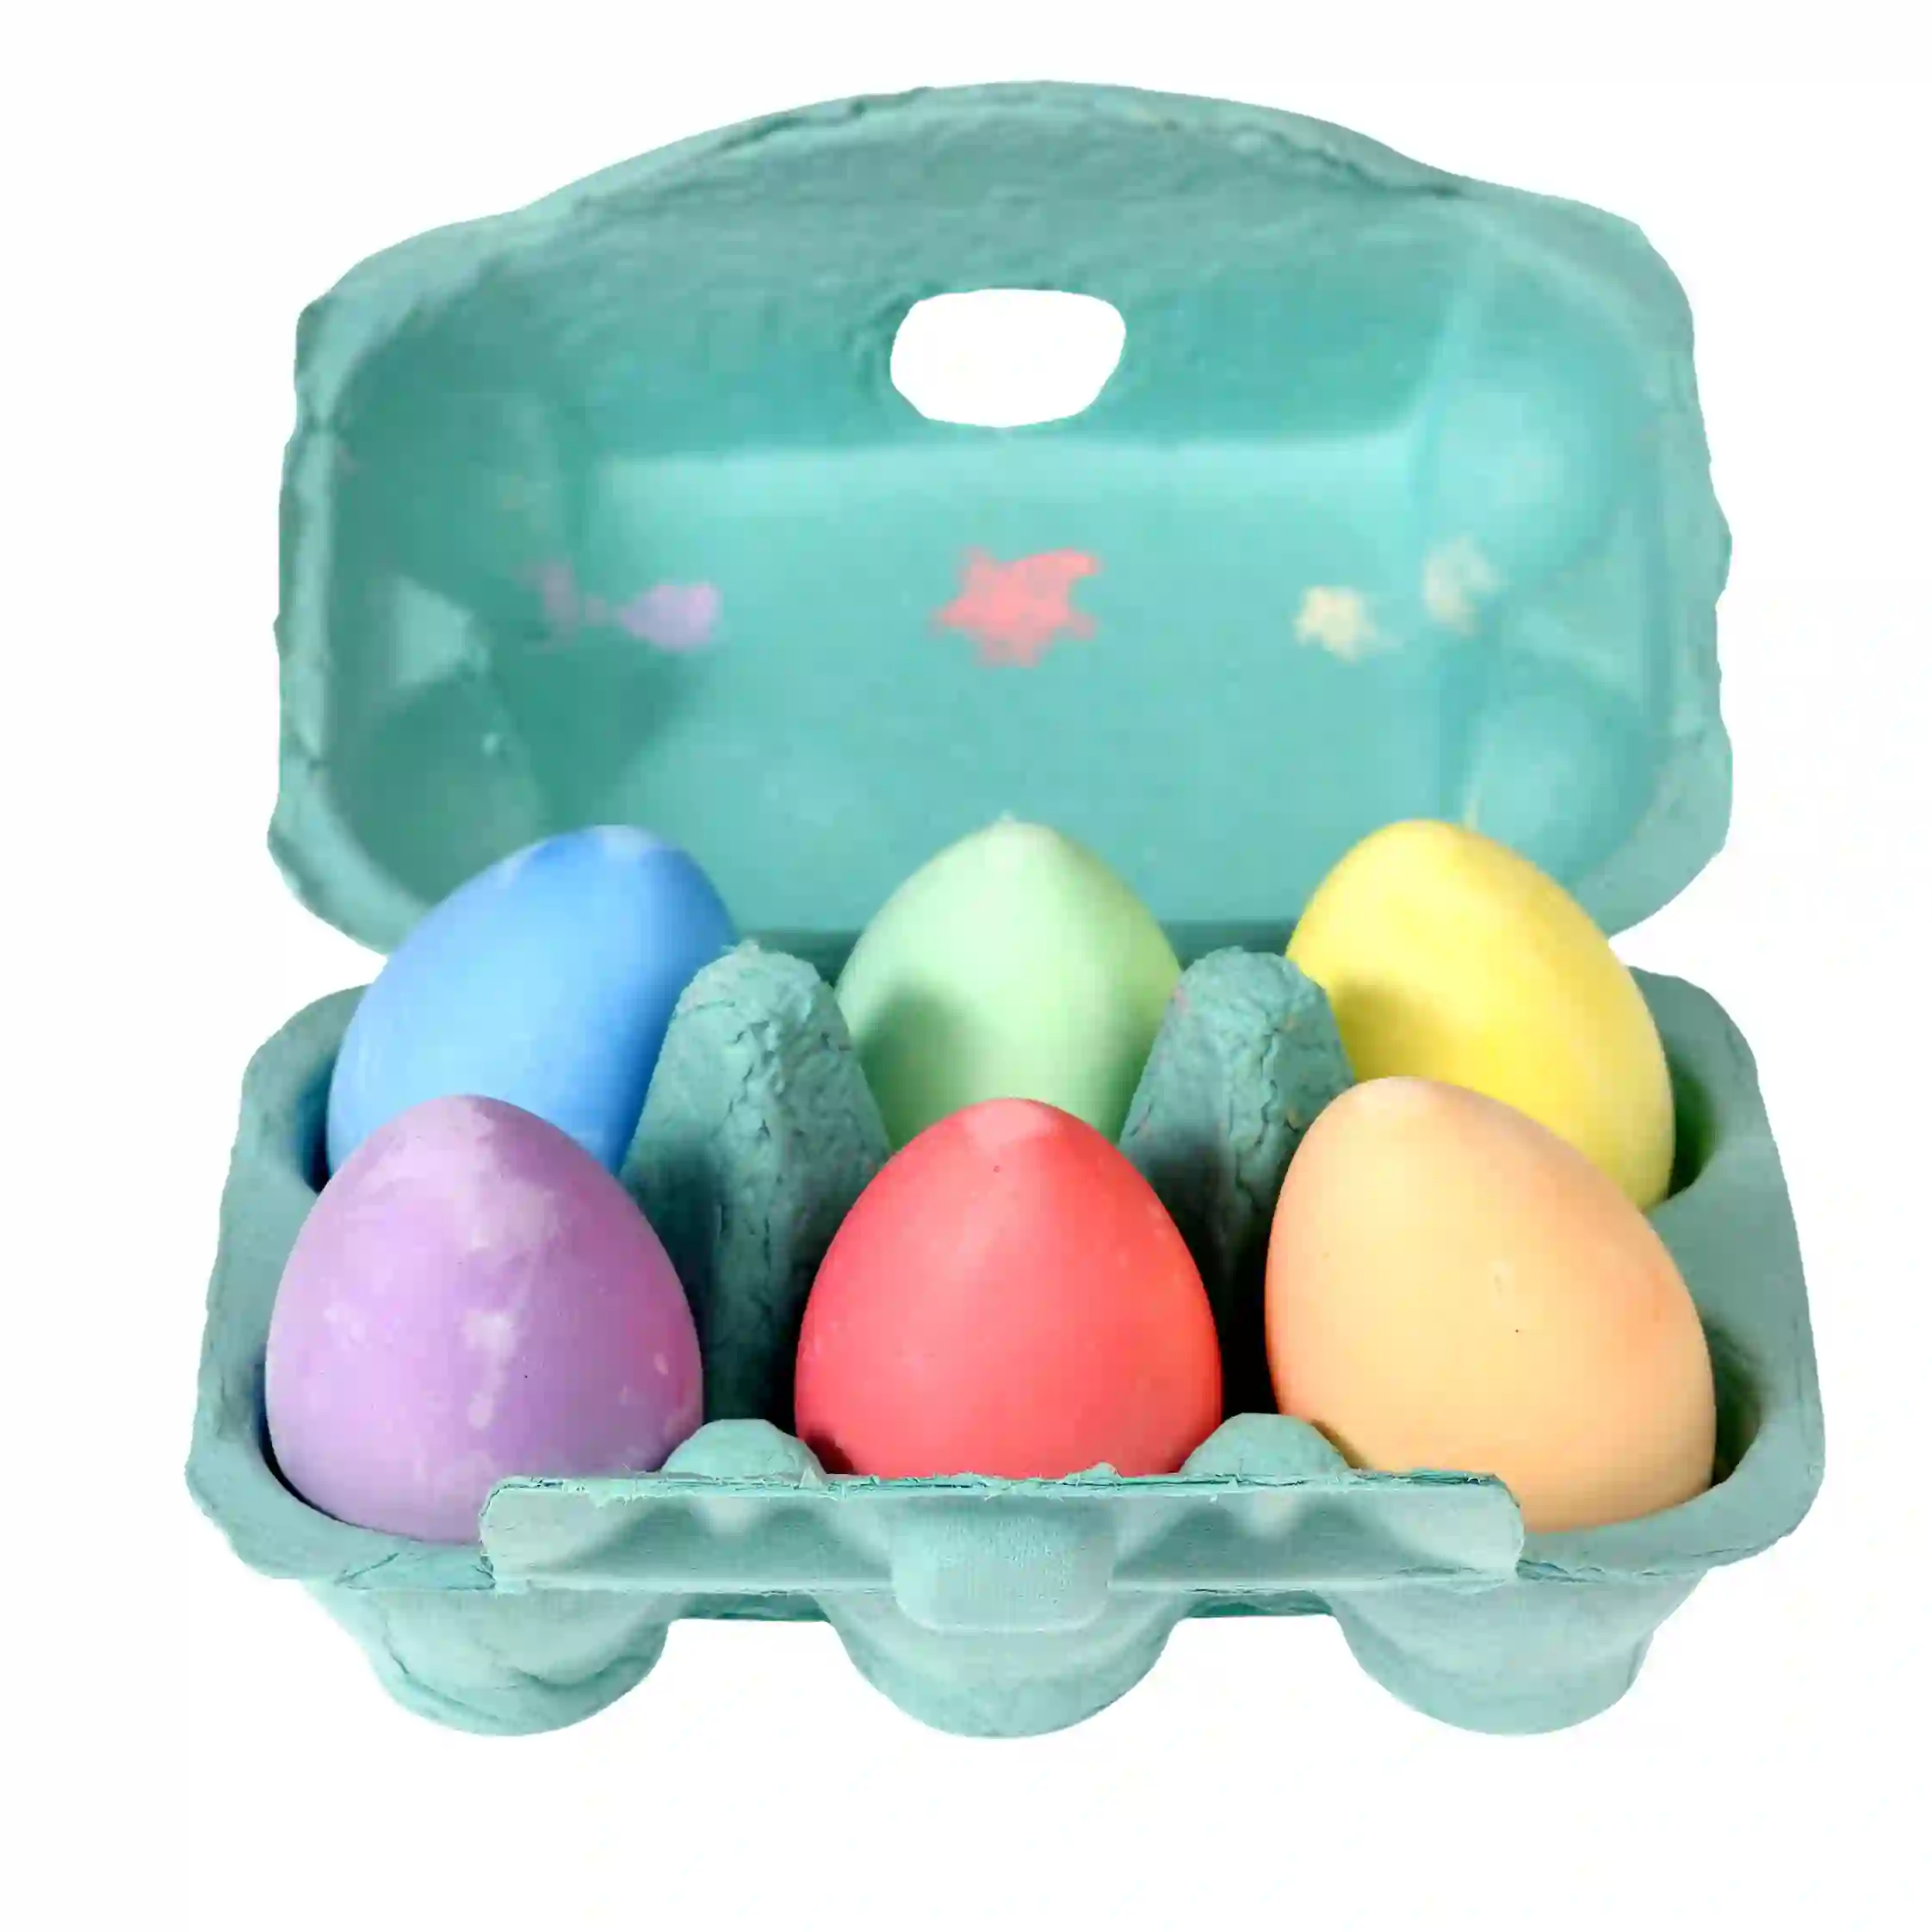 seis huevos coloreados de tiza